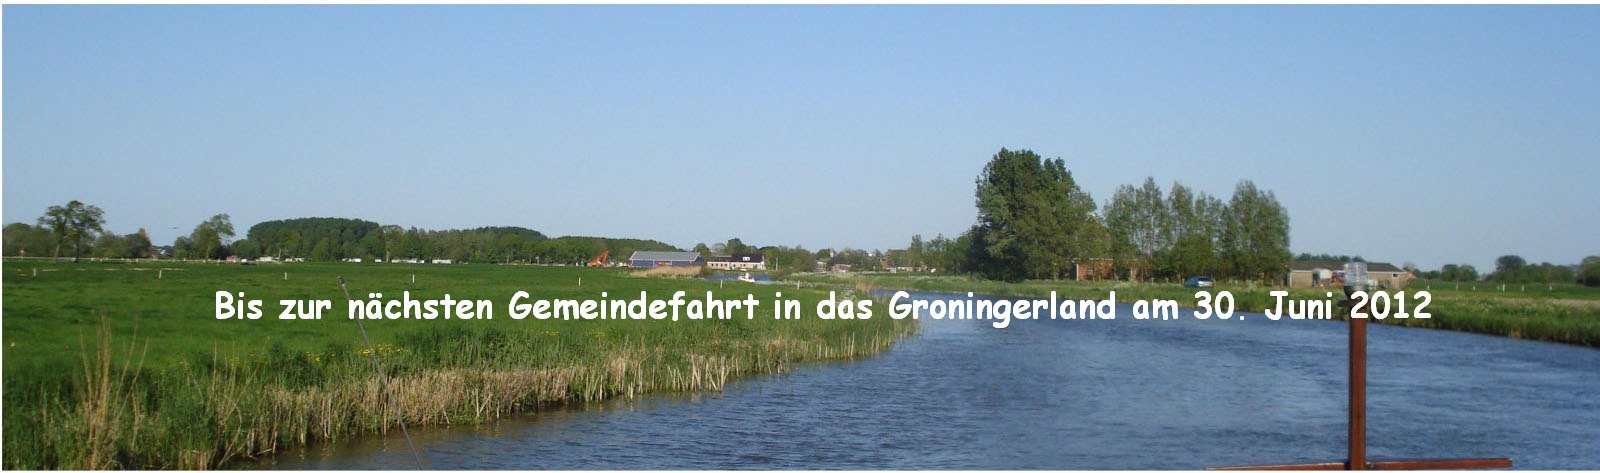 Groningerland